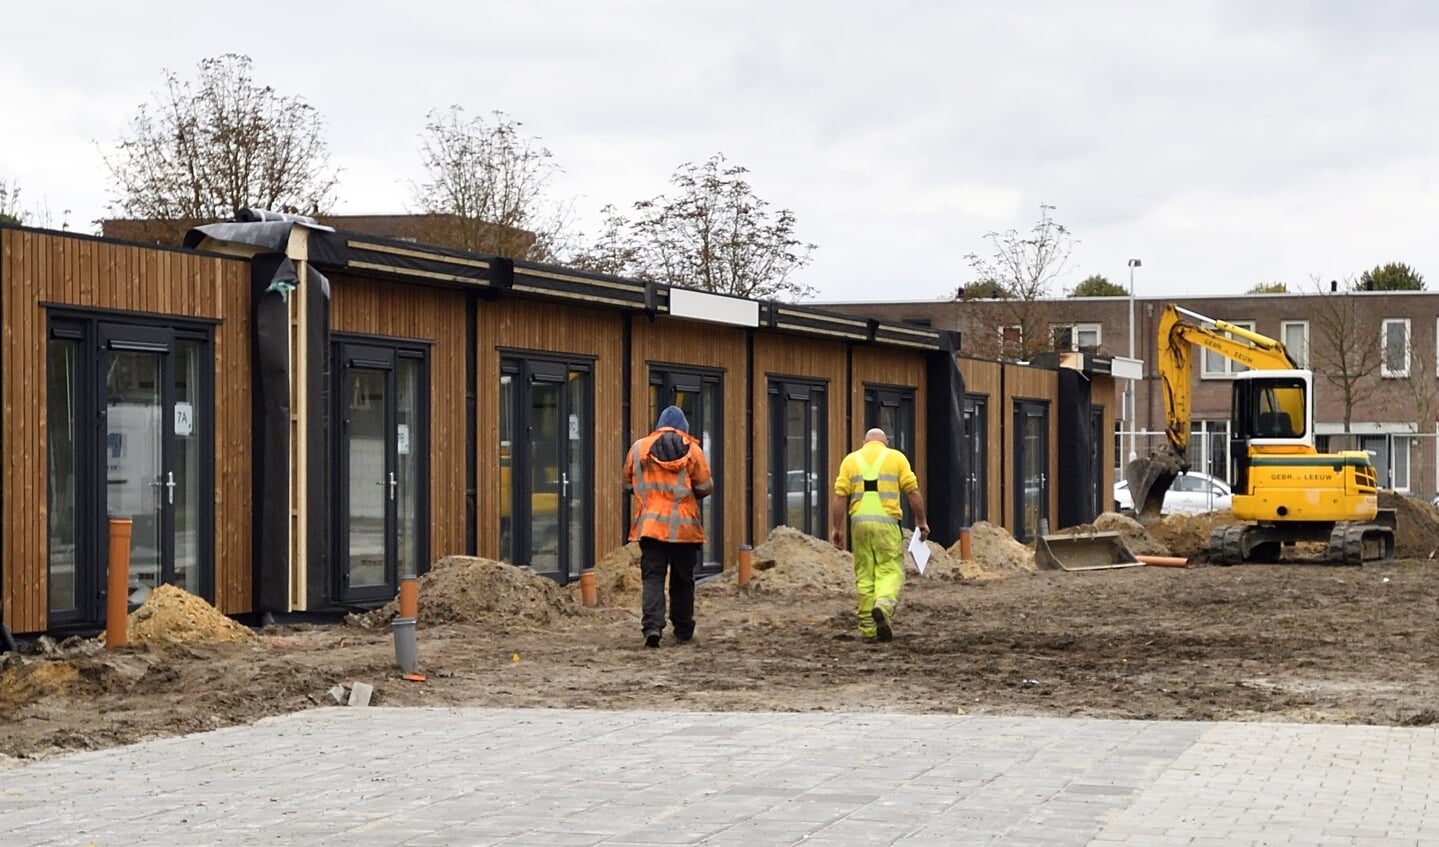 In 2017 gebouwde flexwoningen voor onder anderen statushouders en starters in Breda. In de regio Utrecht worden in de komende tijd 1500 van zulke woningen gebouwd.